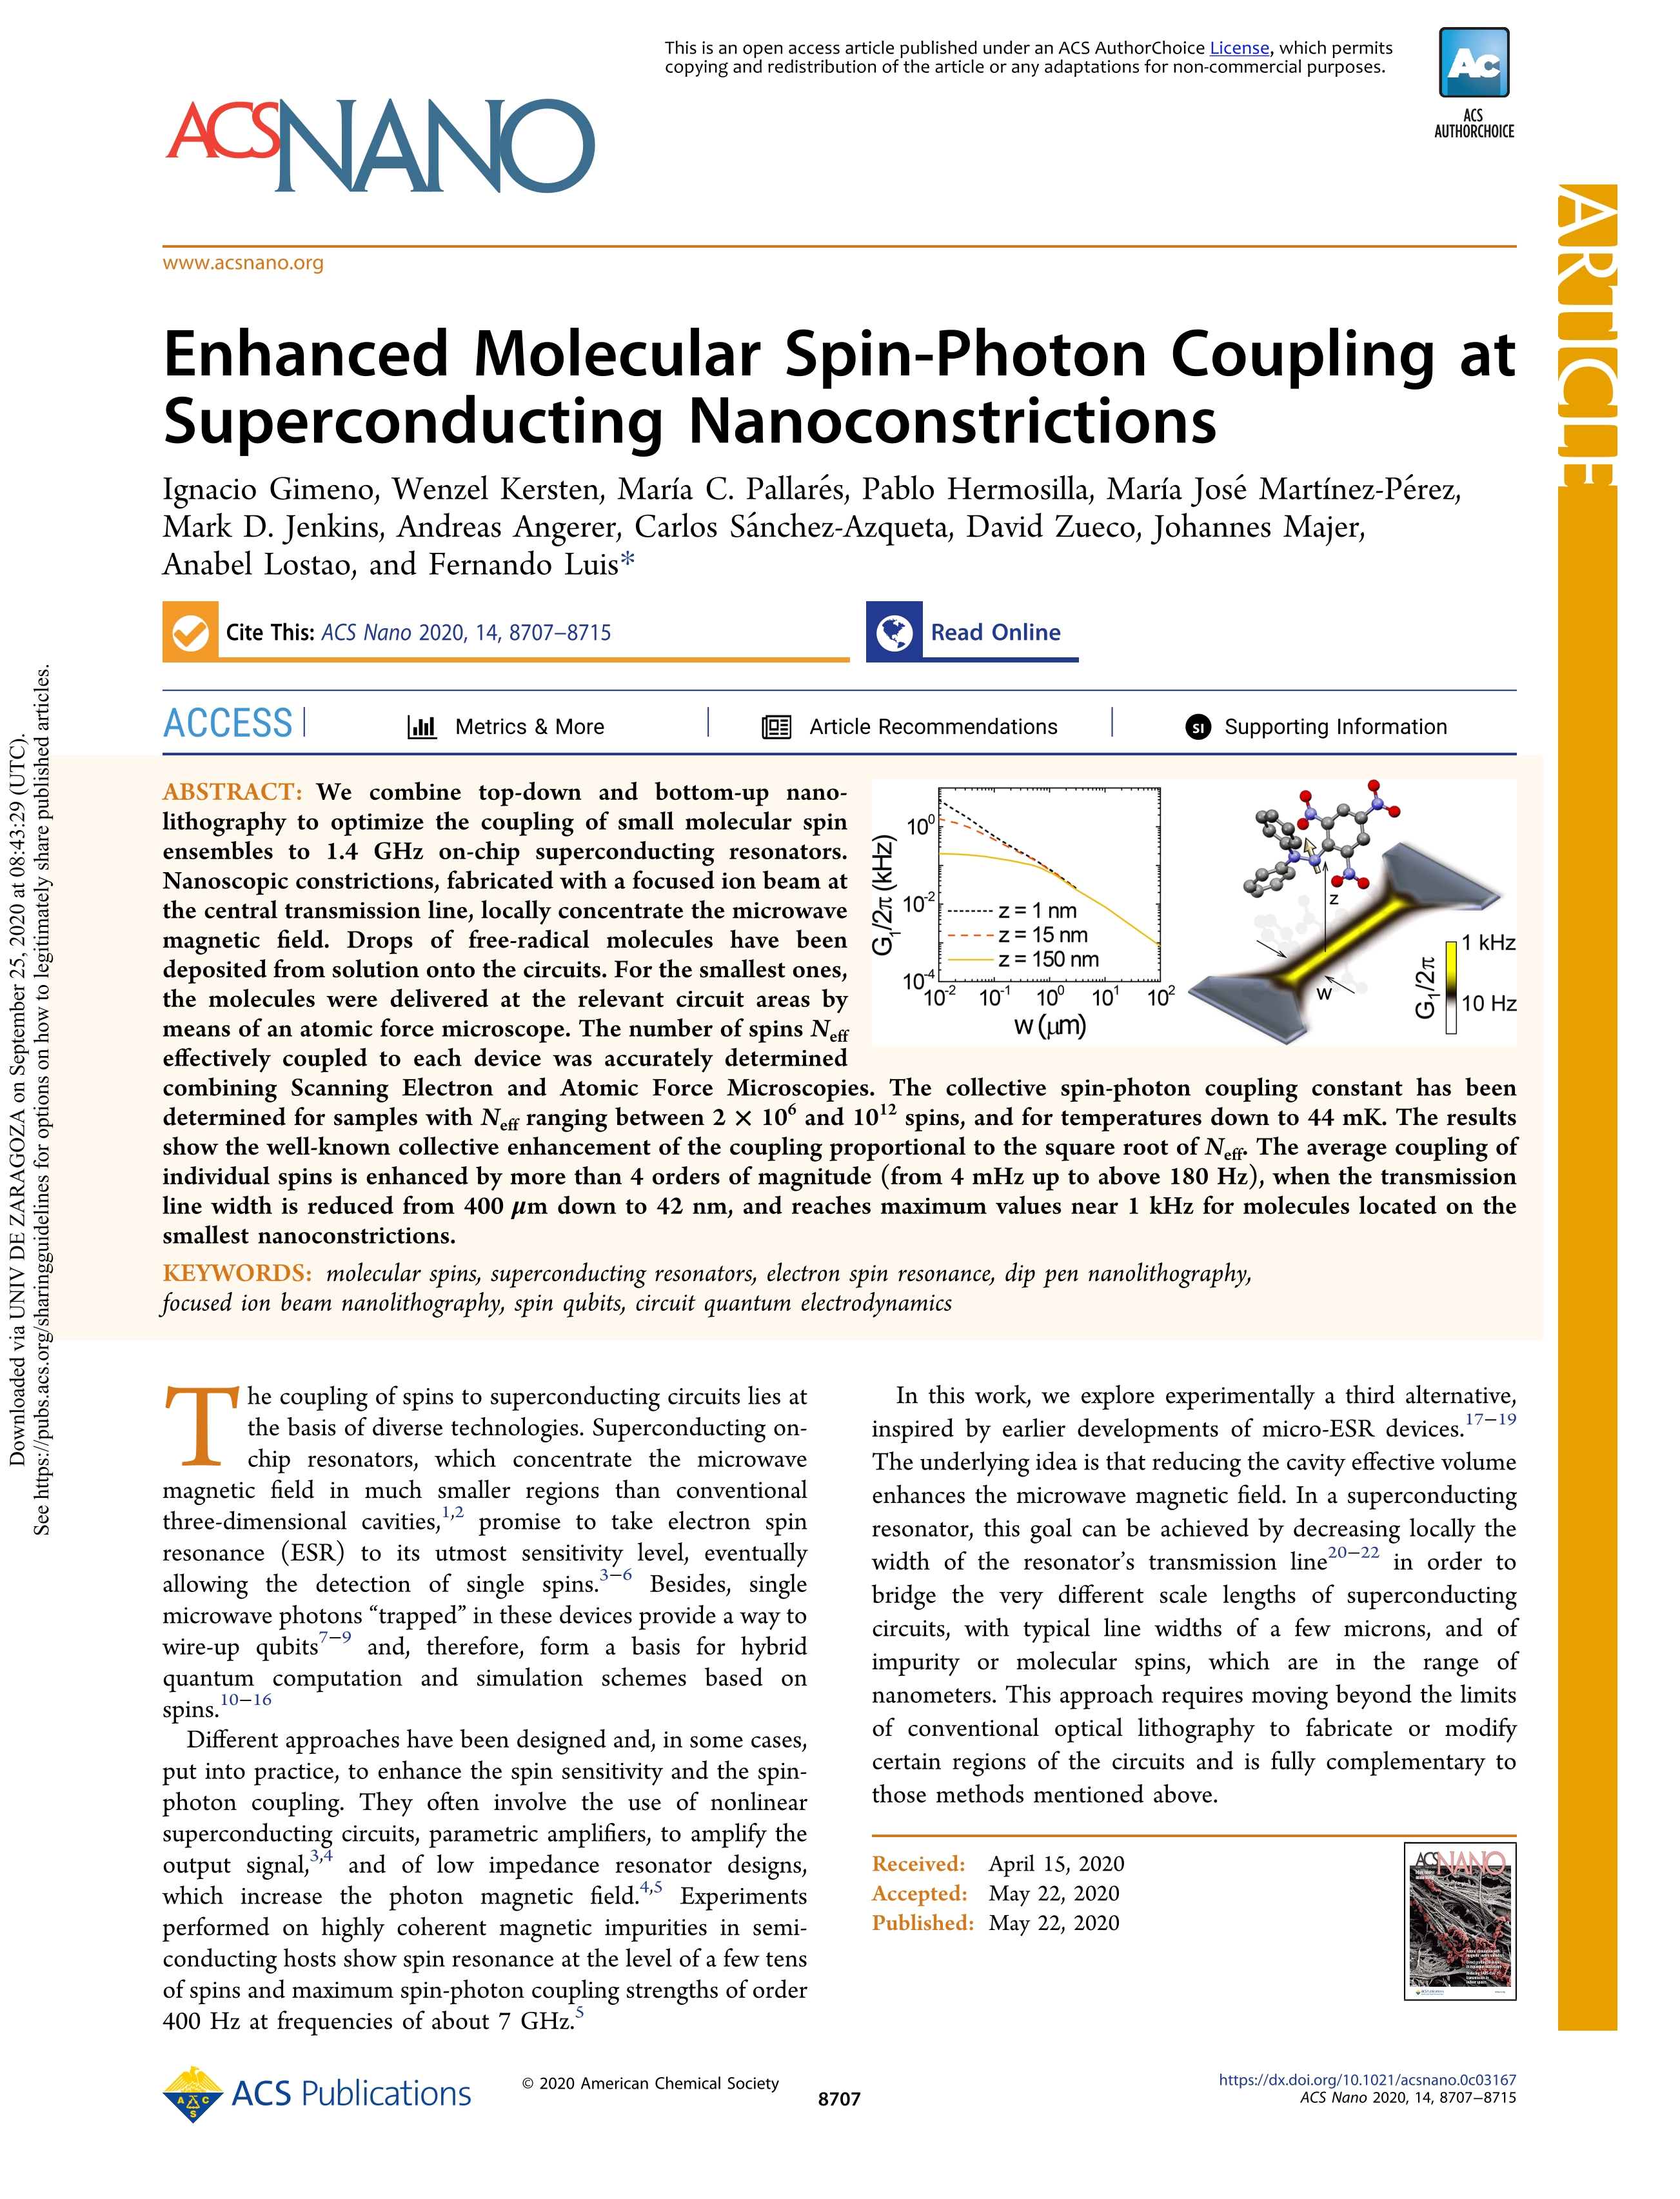 Enhanced Molecular Spin-Photon Coupling at Superconducting Nanoconstrictions